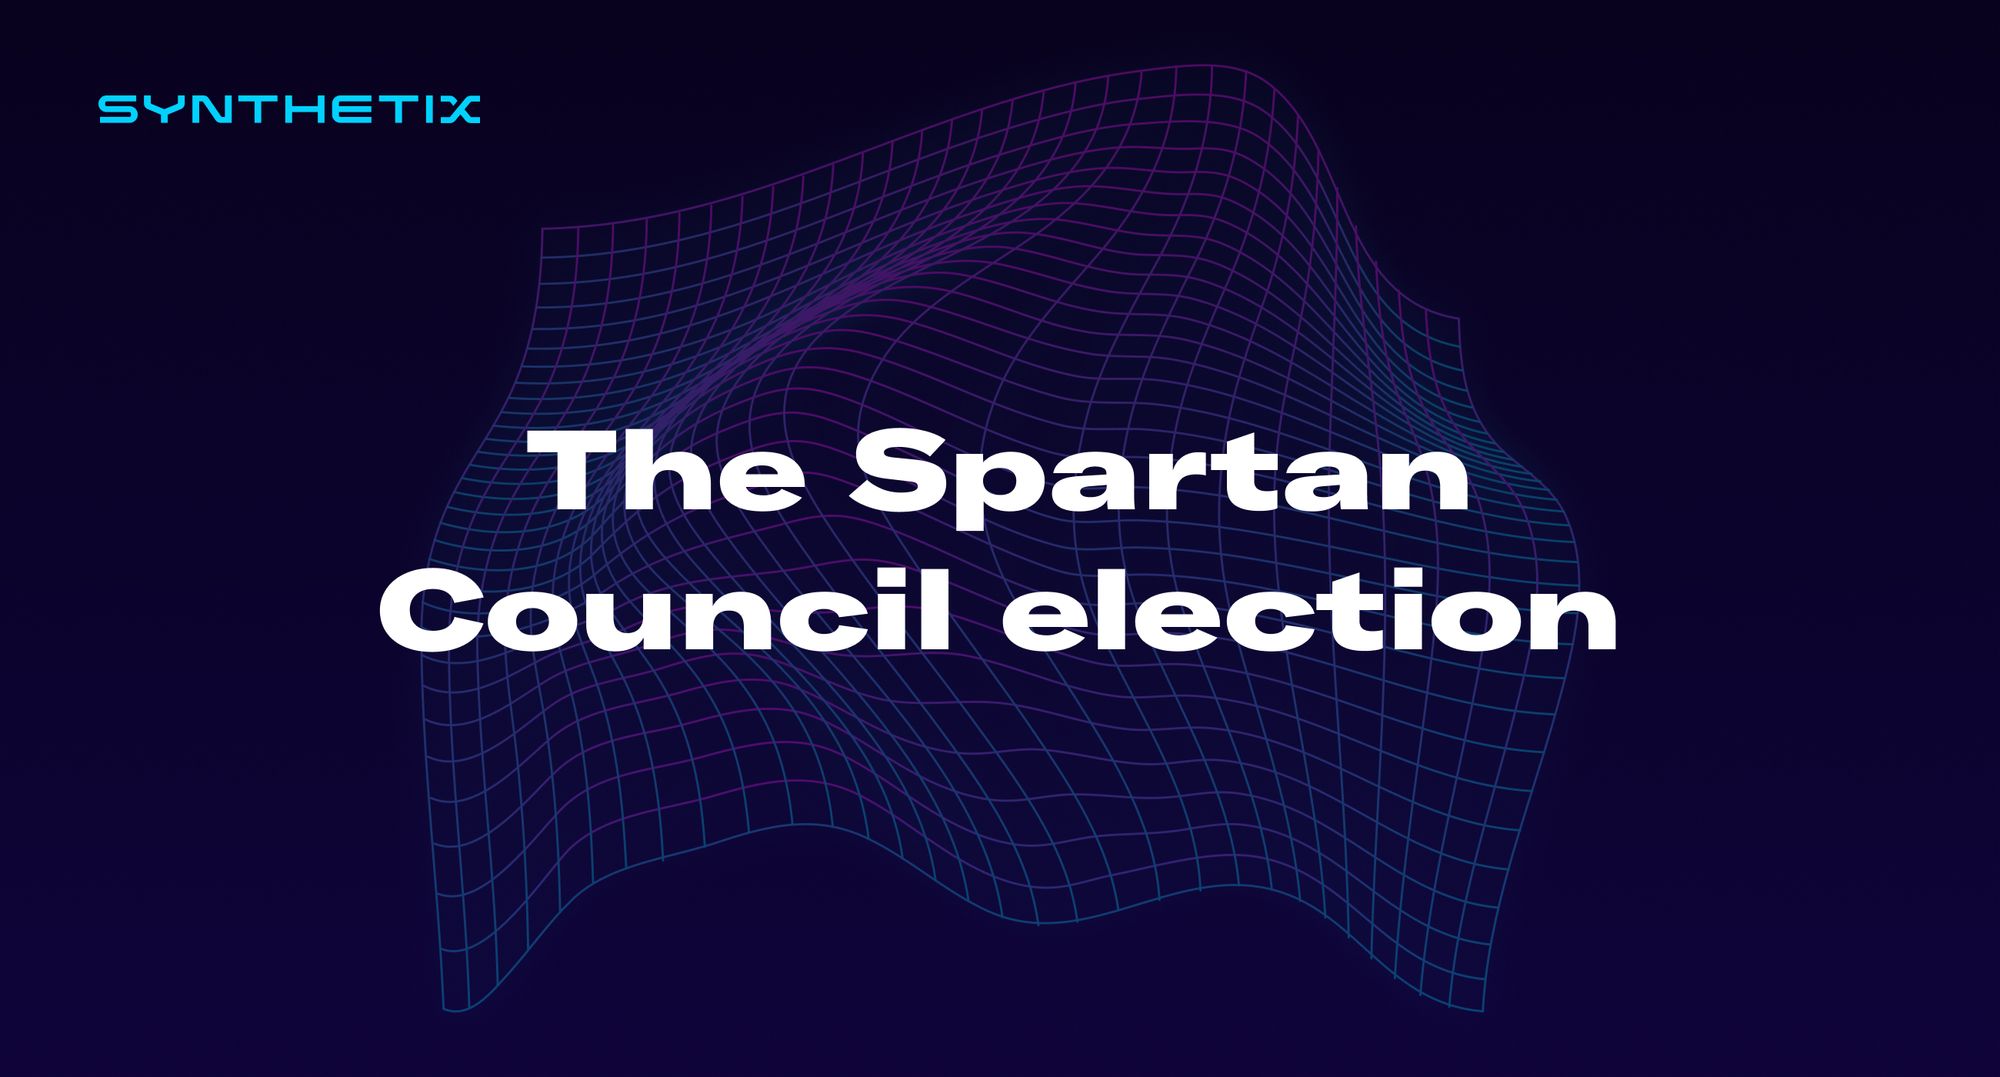 The Spartan Council election